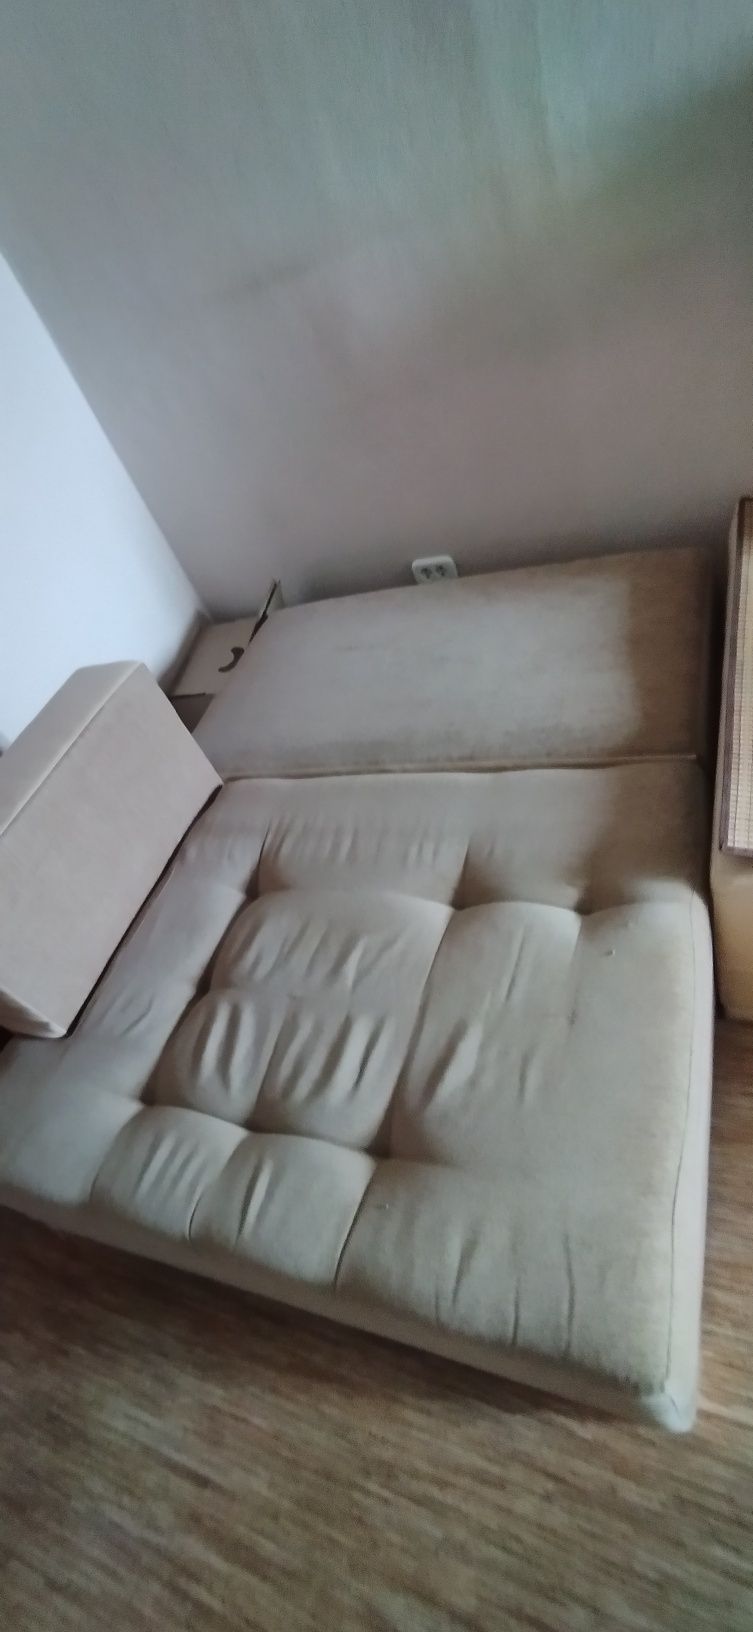 Продам диван из 4 модулей